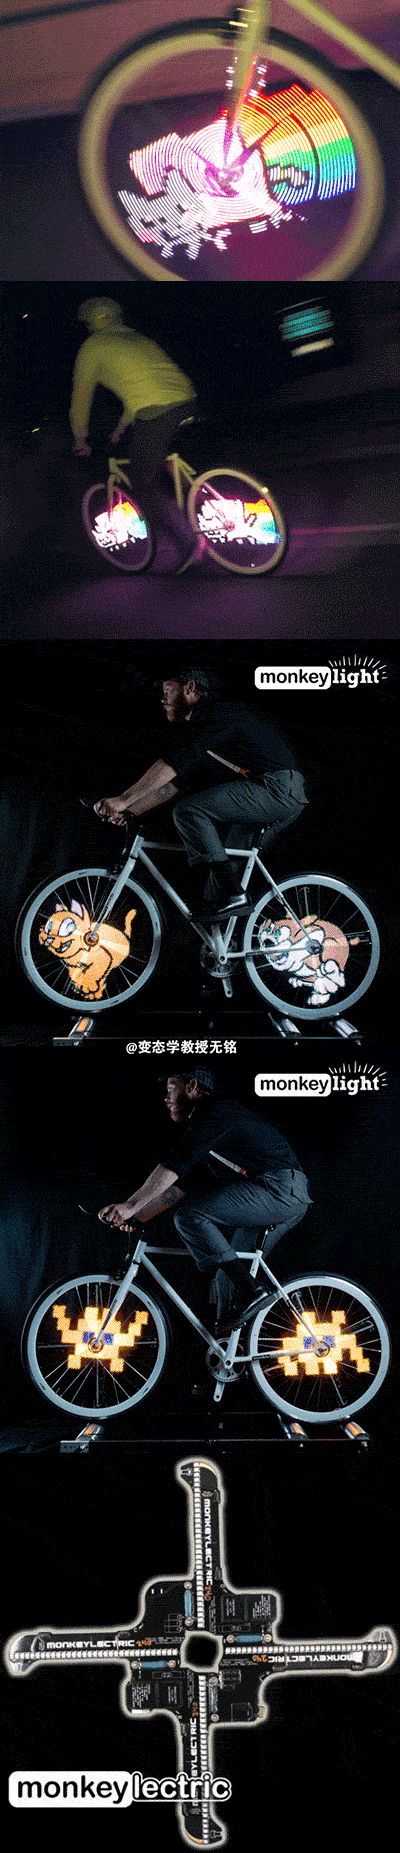 让自行车轮播动画的装置Monkey Li...